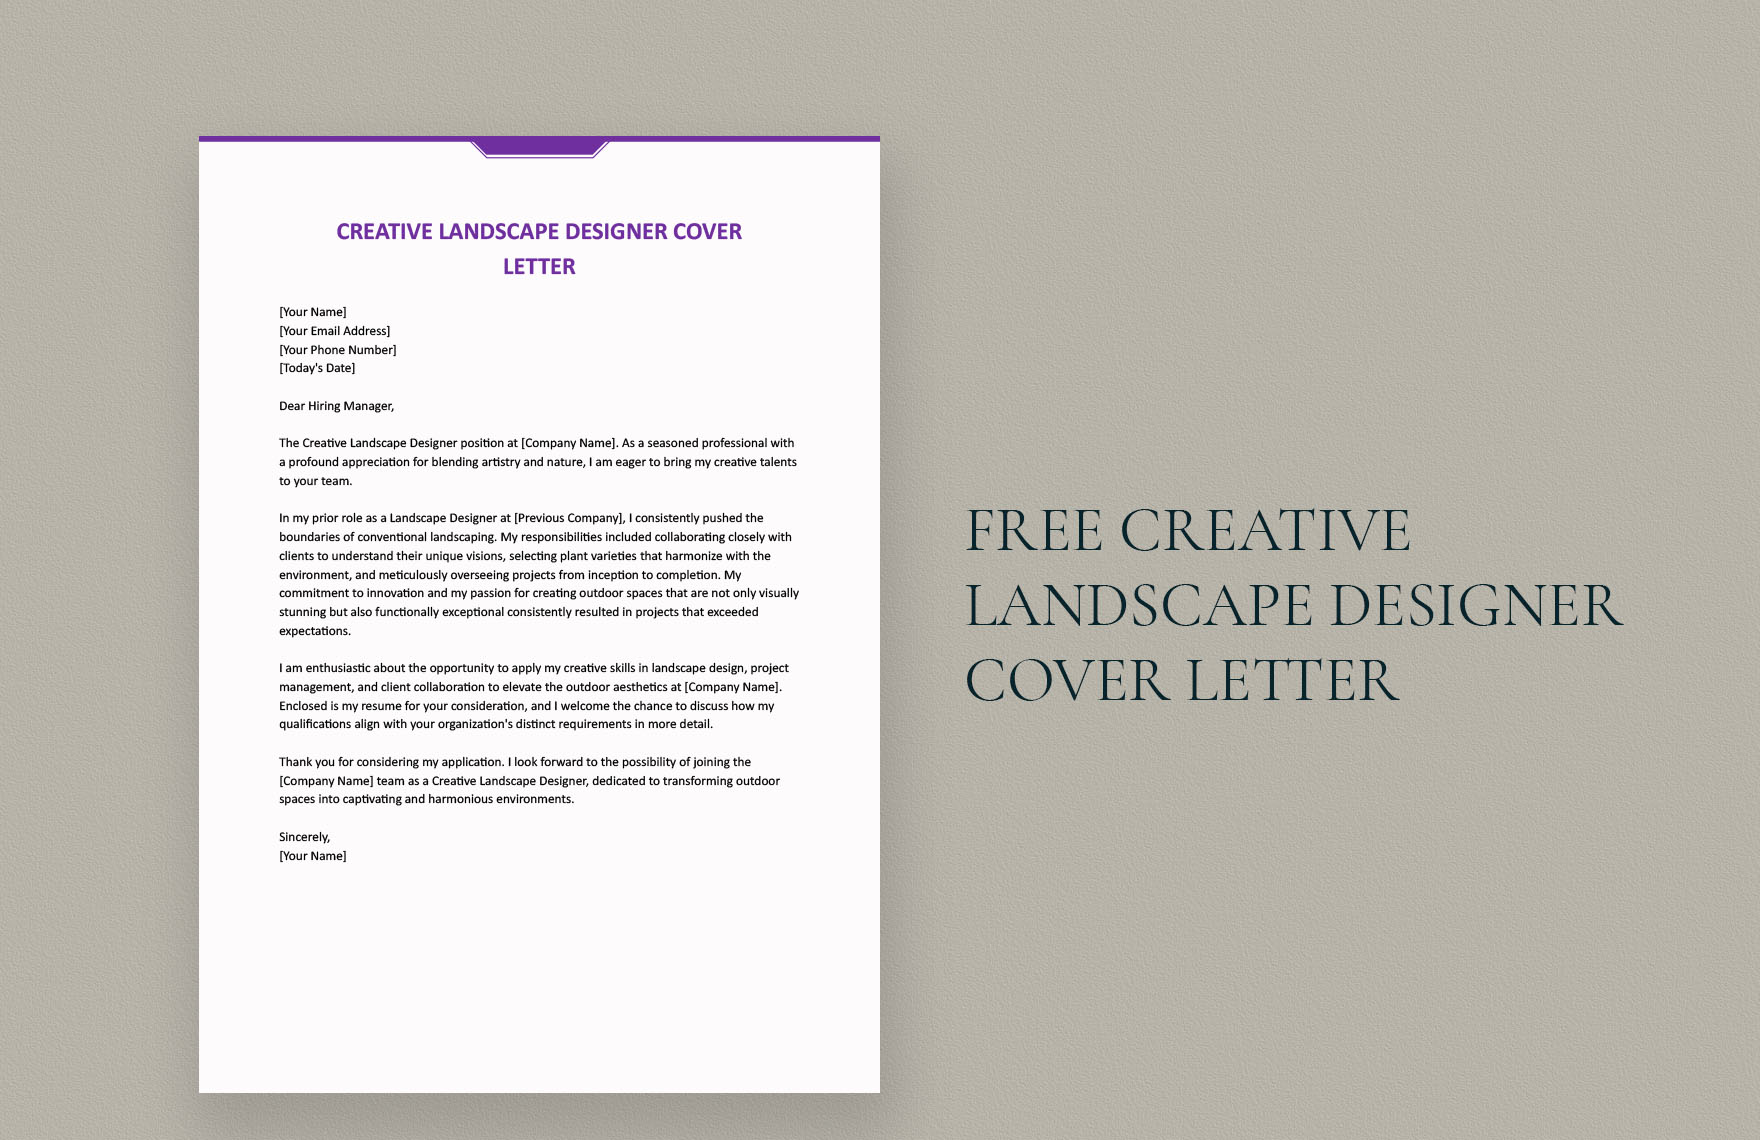 Creative Landscape Designer Cover Letter in Word, Google Docs